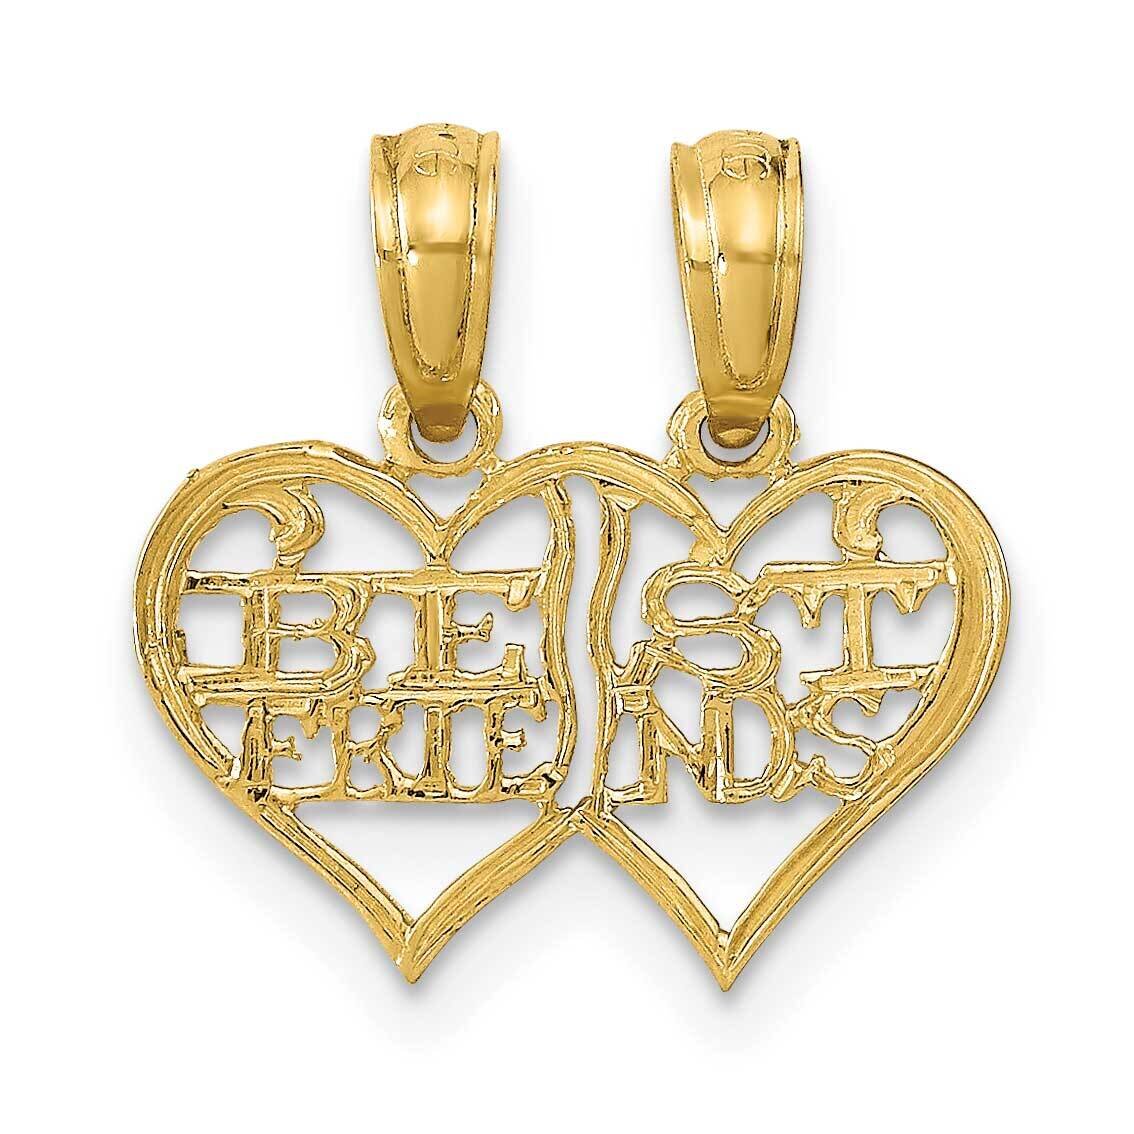 2 Piece Break Apart Best Friends Hearts Pendant 14k Gold Polished K9757